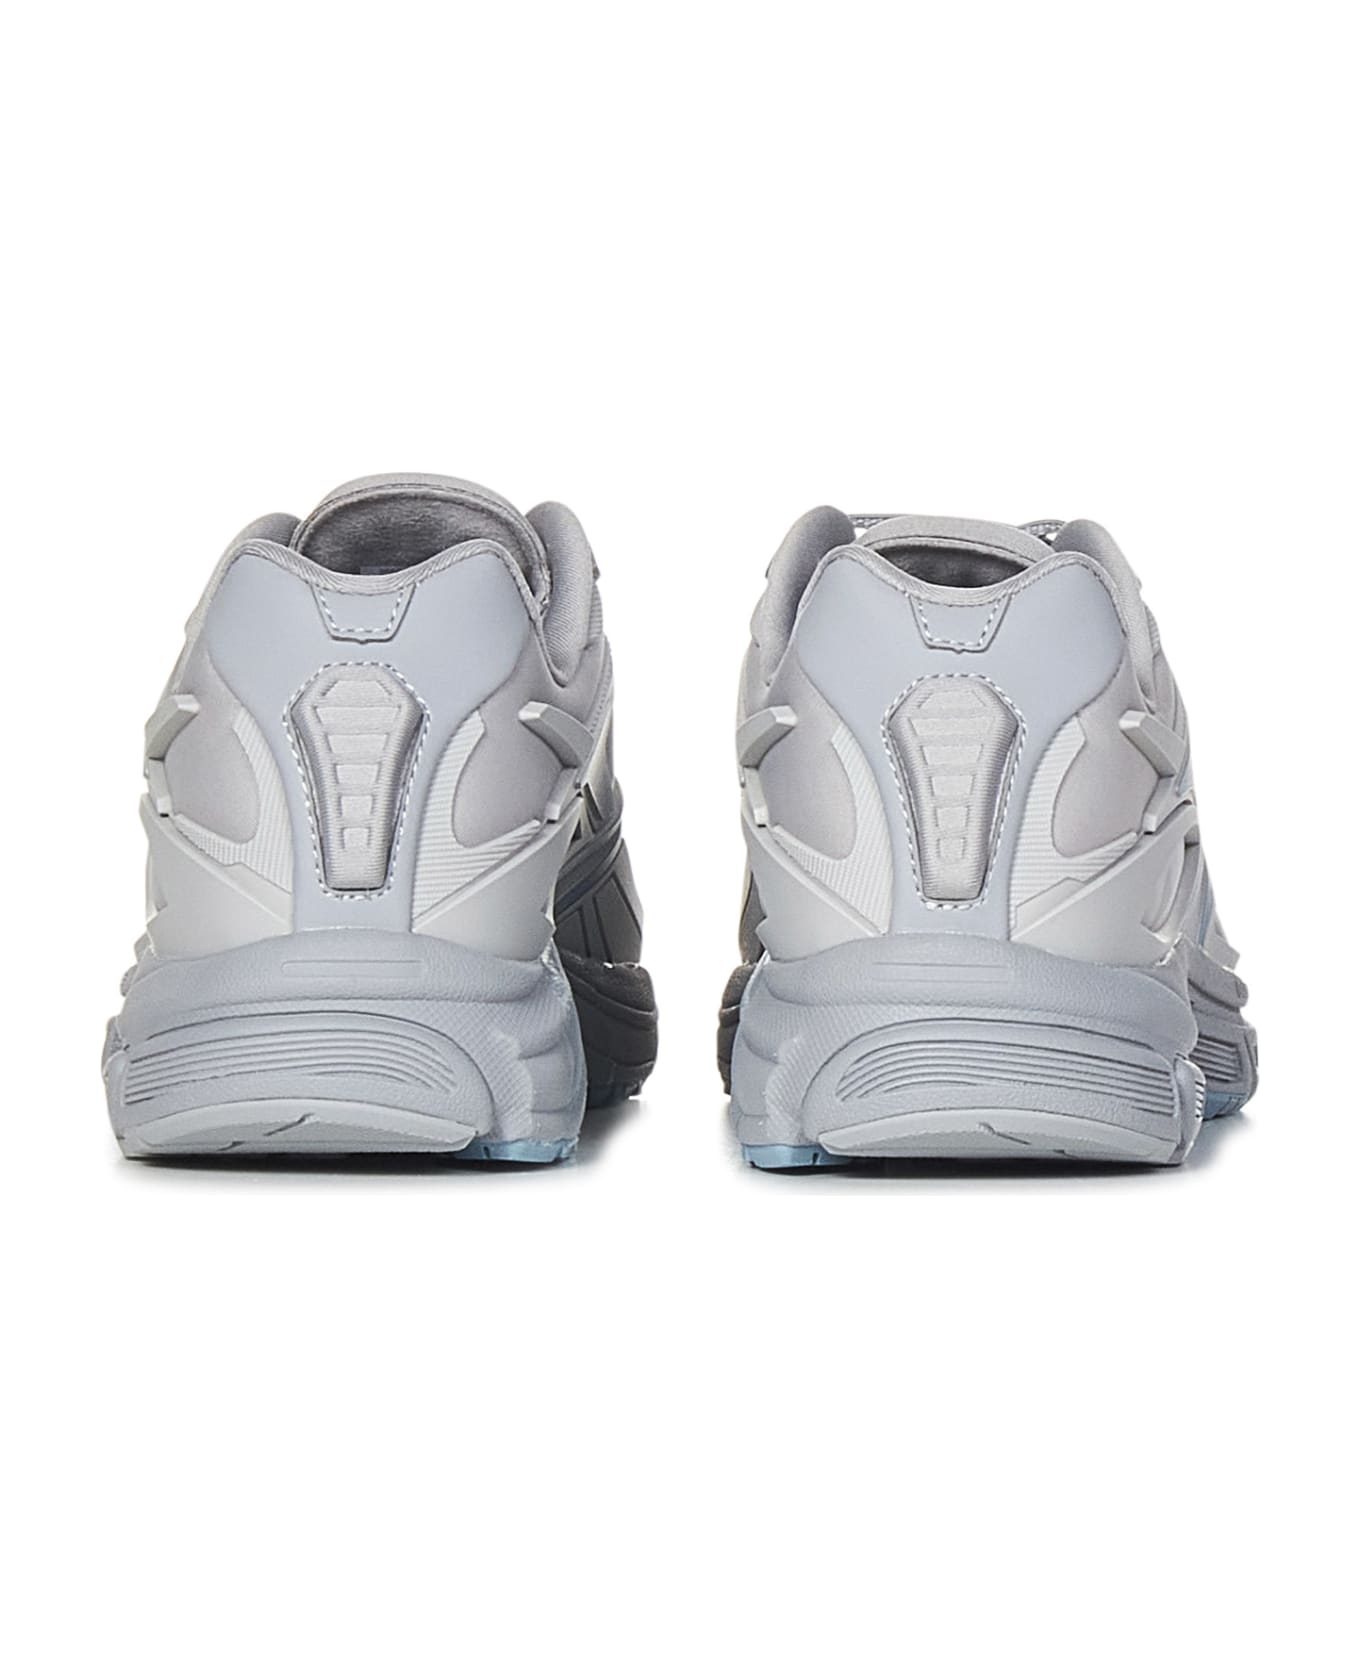 Reebok Premier Road Modern Sneakers - Grey